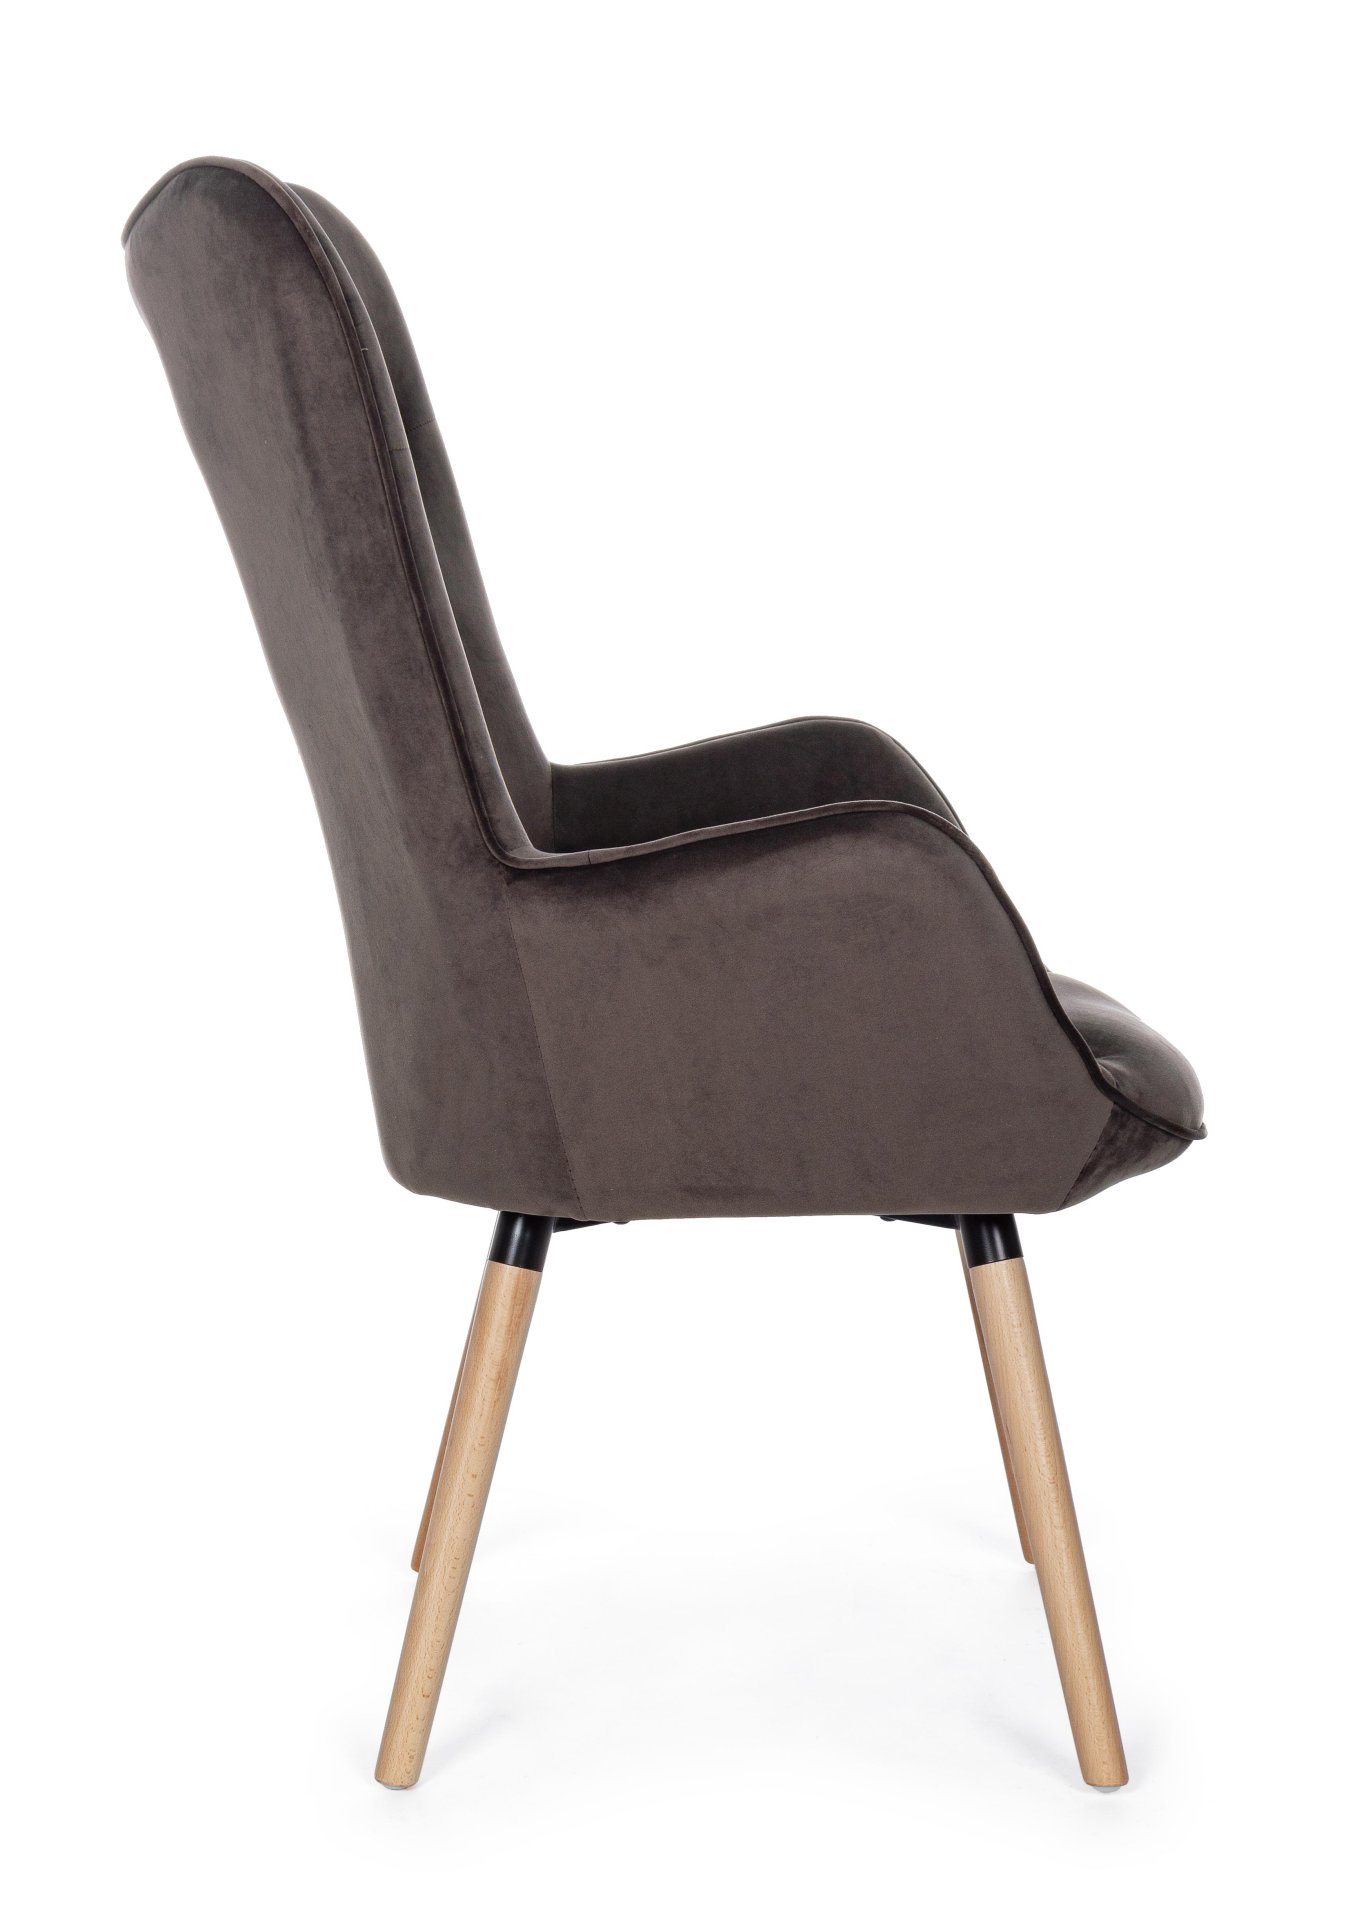 Der Sessel Juliet überzeugt mit seinem modernen Design. Gefertigt wurde er aus Stoff in Samt-Optik, welcher einen braunen Farbton besitzt. Das Gestell ist aus Buchenholz und hat eine natürliche Farbe. Der Sessel besitzt eine Sitzhöhe von 48 cm. Die Breite